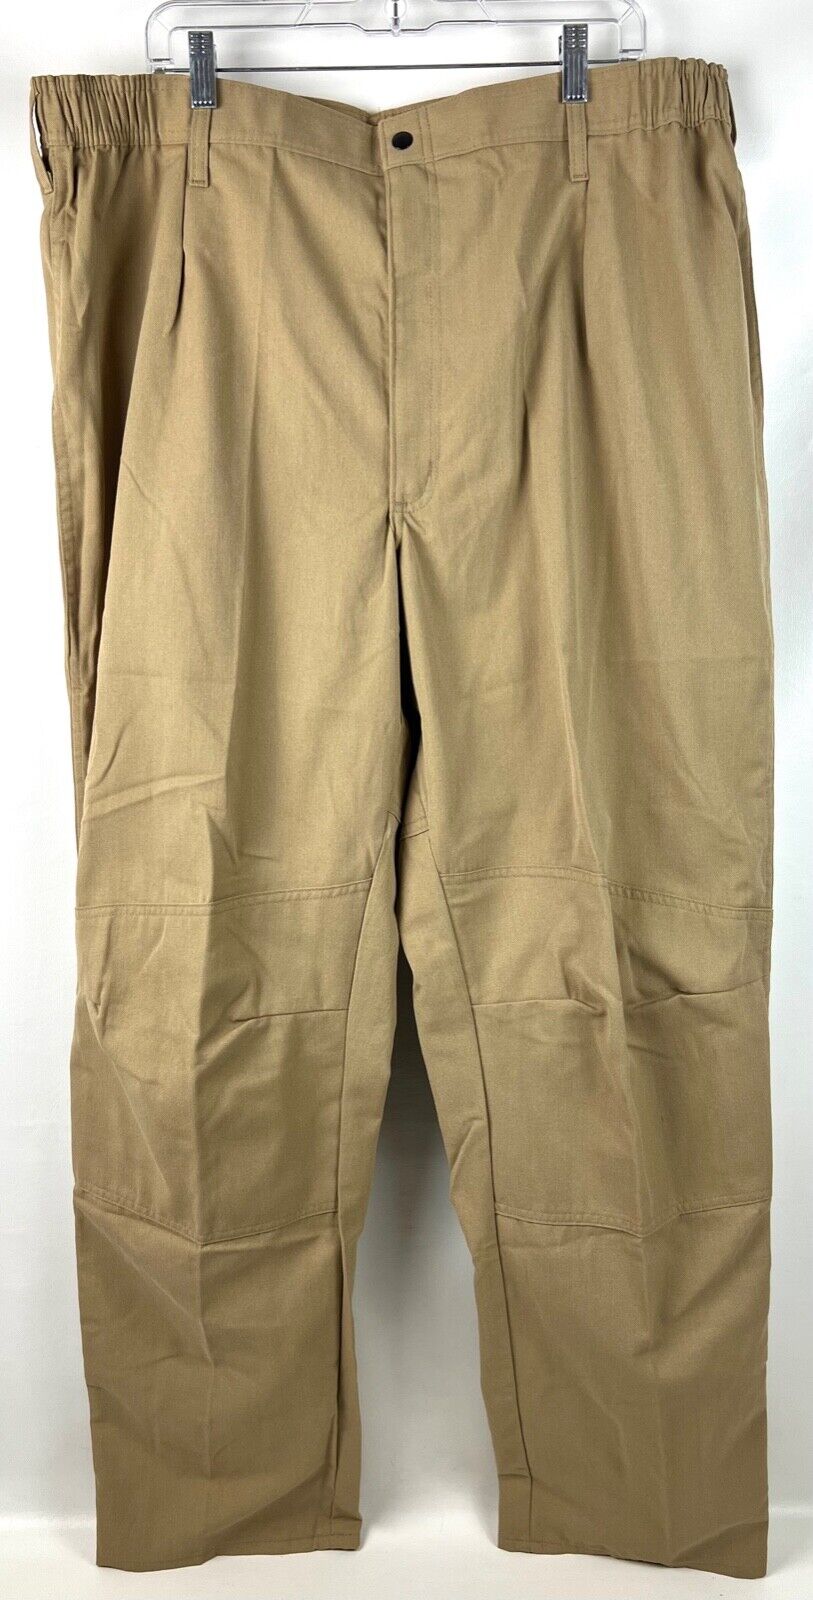 New Propper US Navy Fire Resistant Flight Deck Trouser Pants Khaki X-Large Long